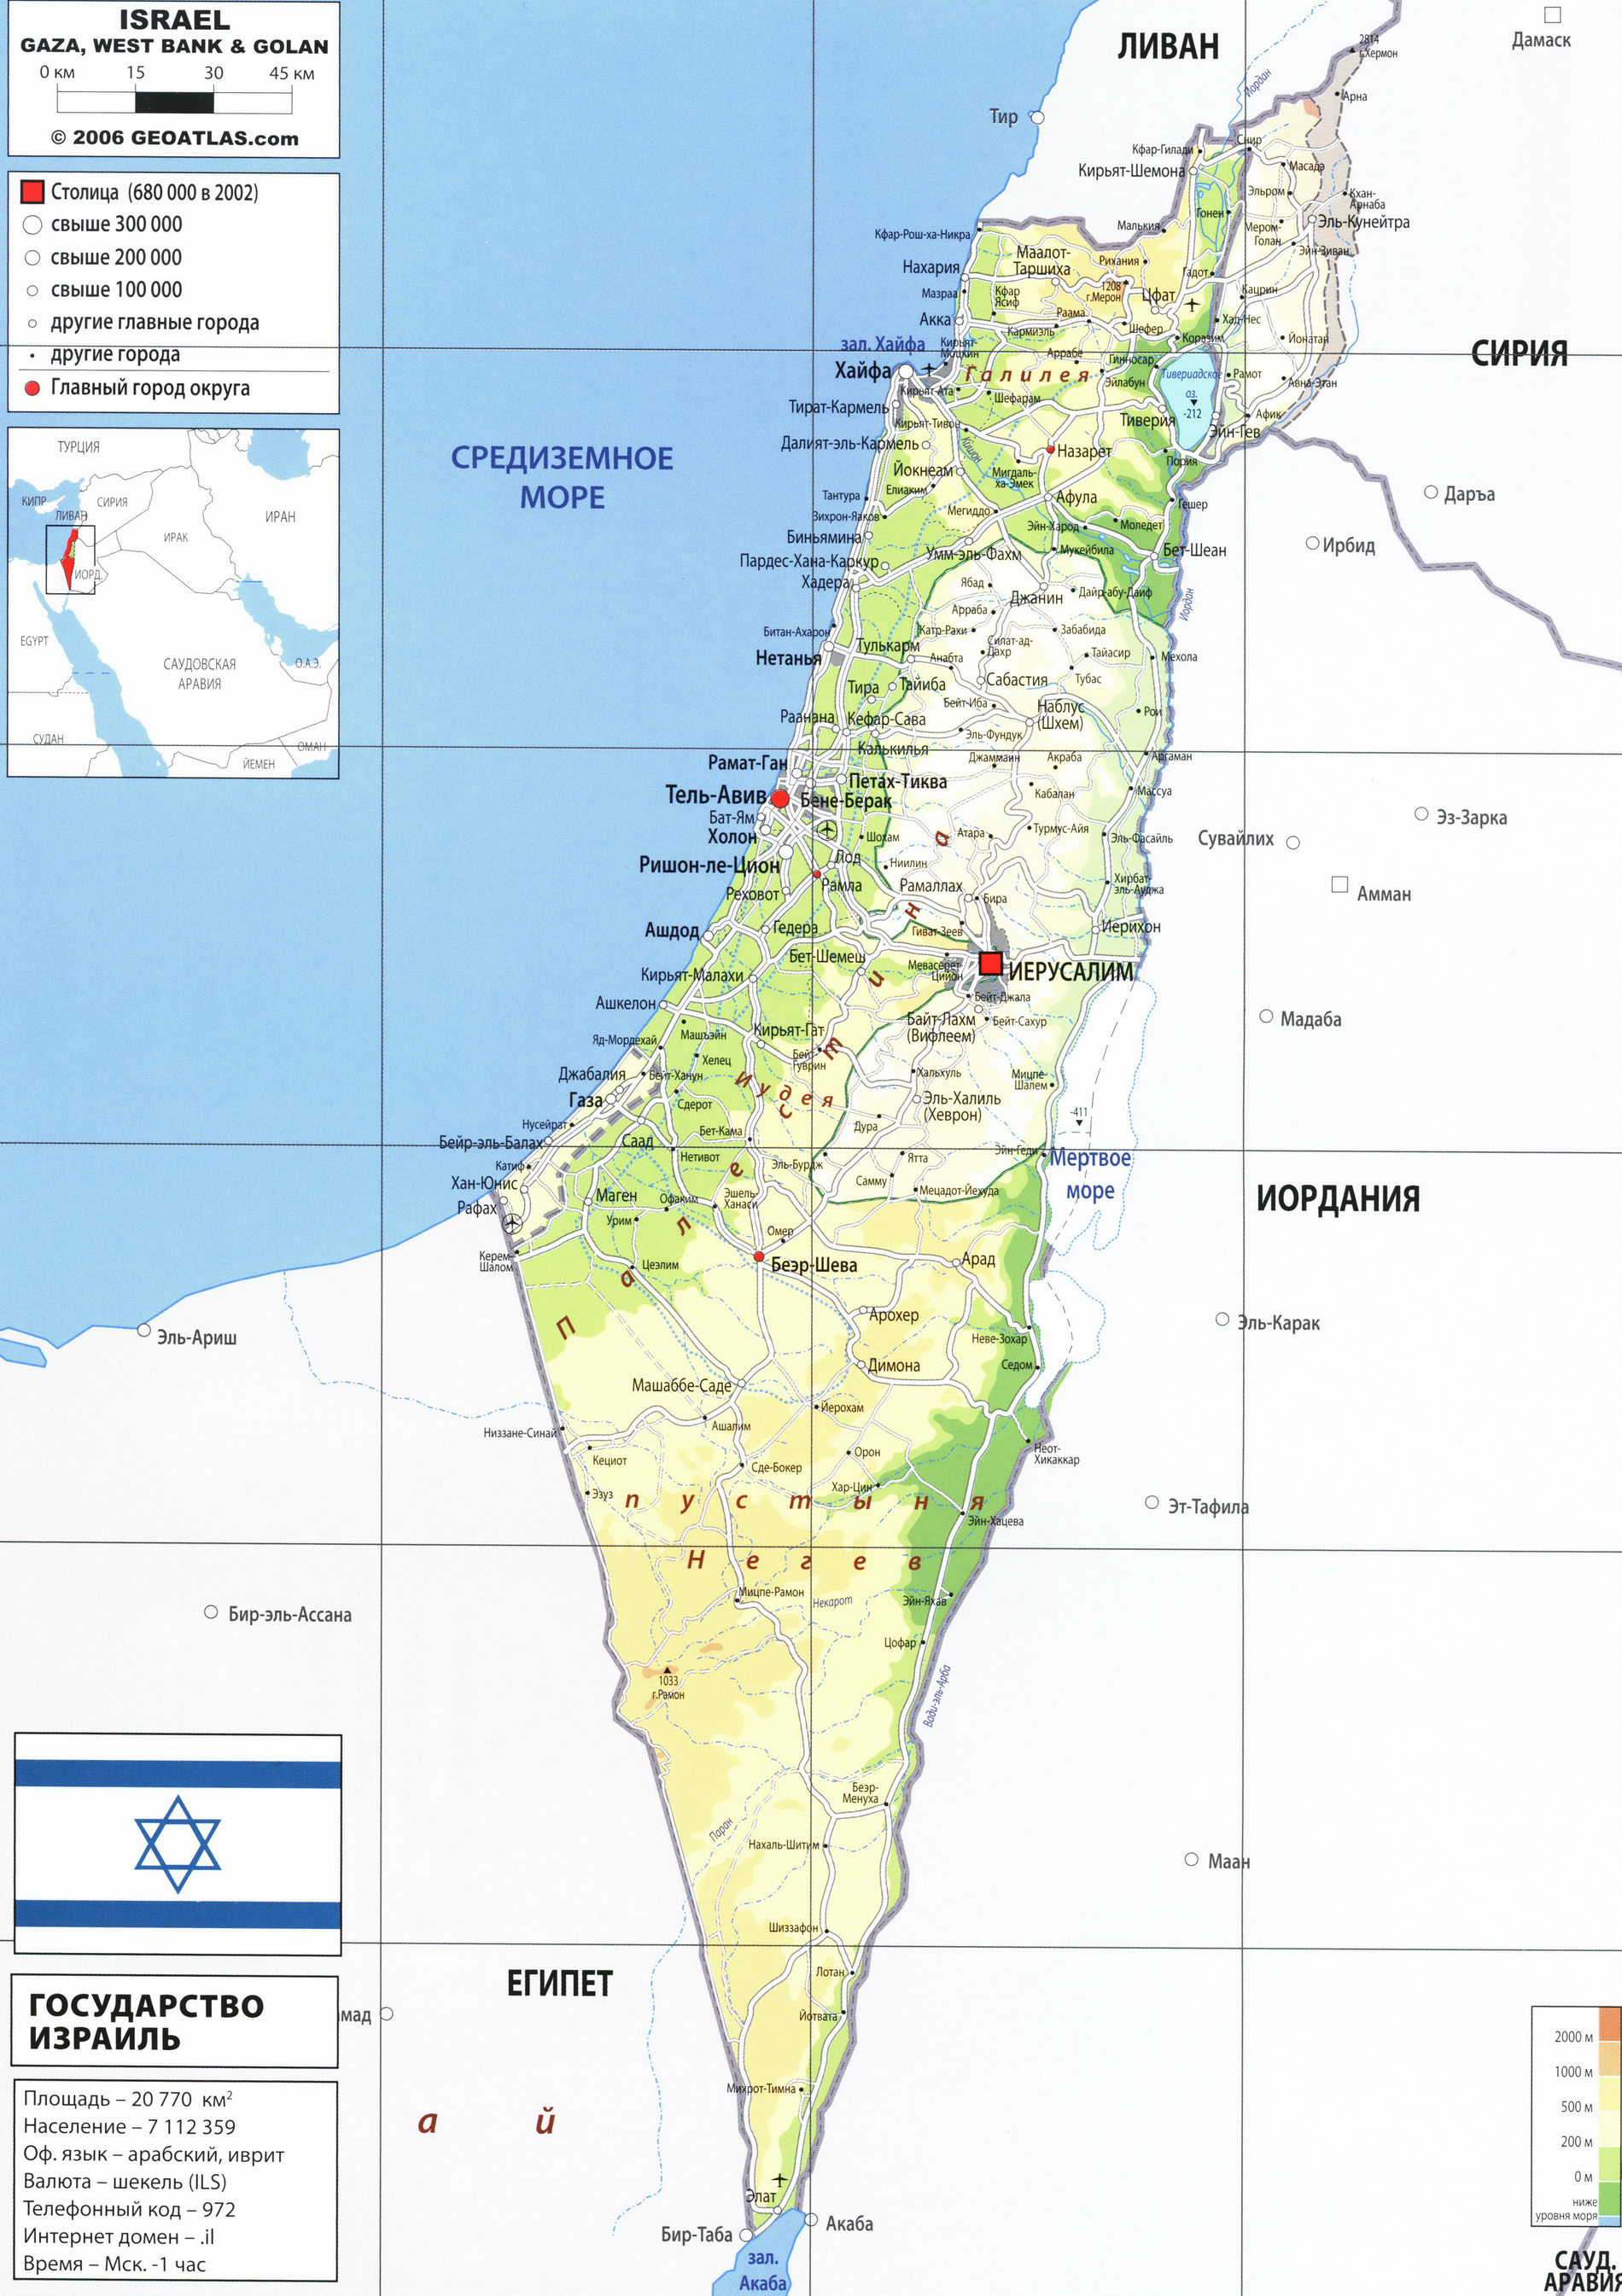 Географическая карта израиля крупным планом на русском языке